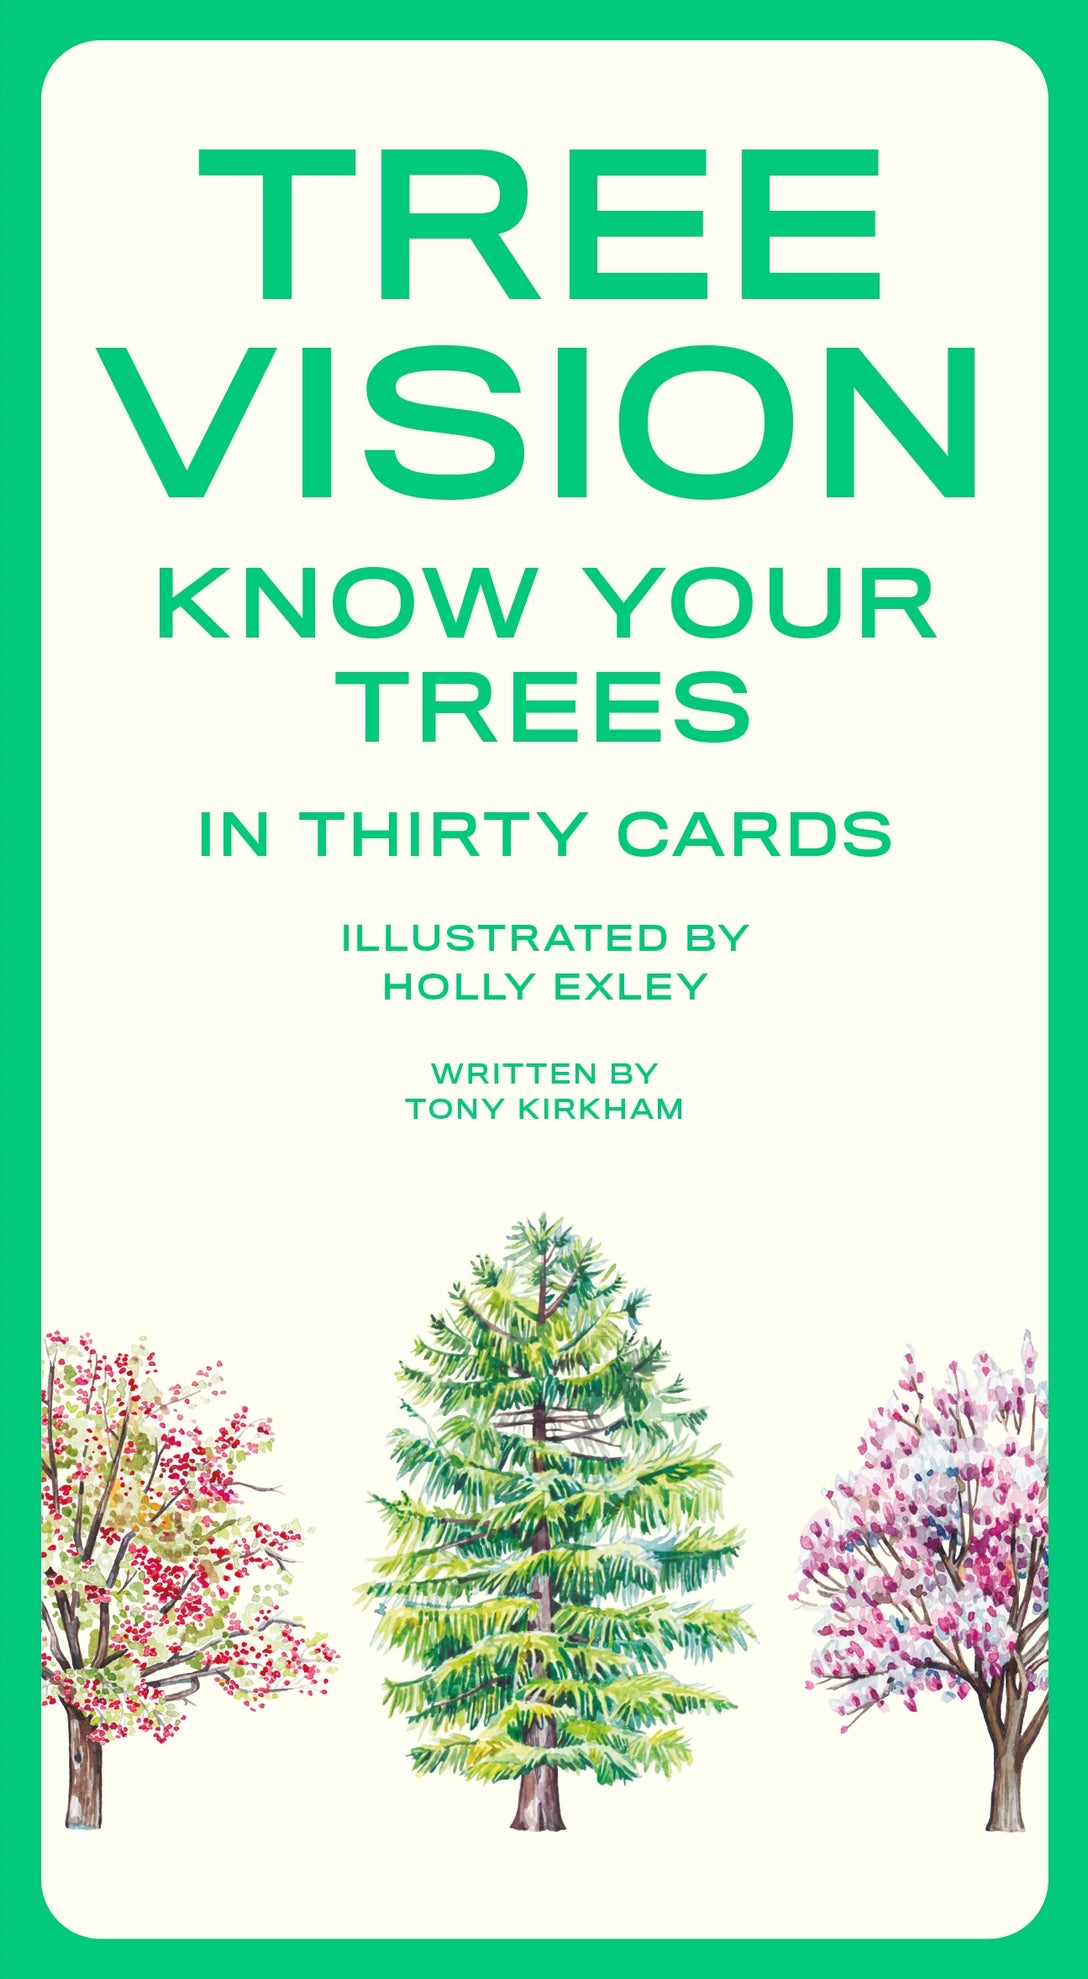 Tree Vision by Holly Exley, Tony Kirkham